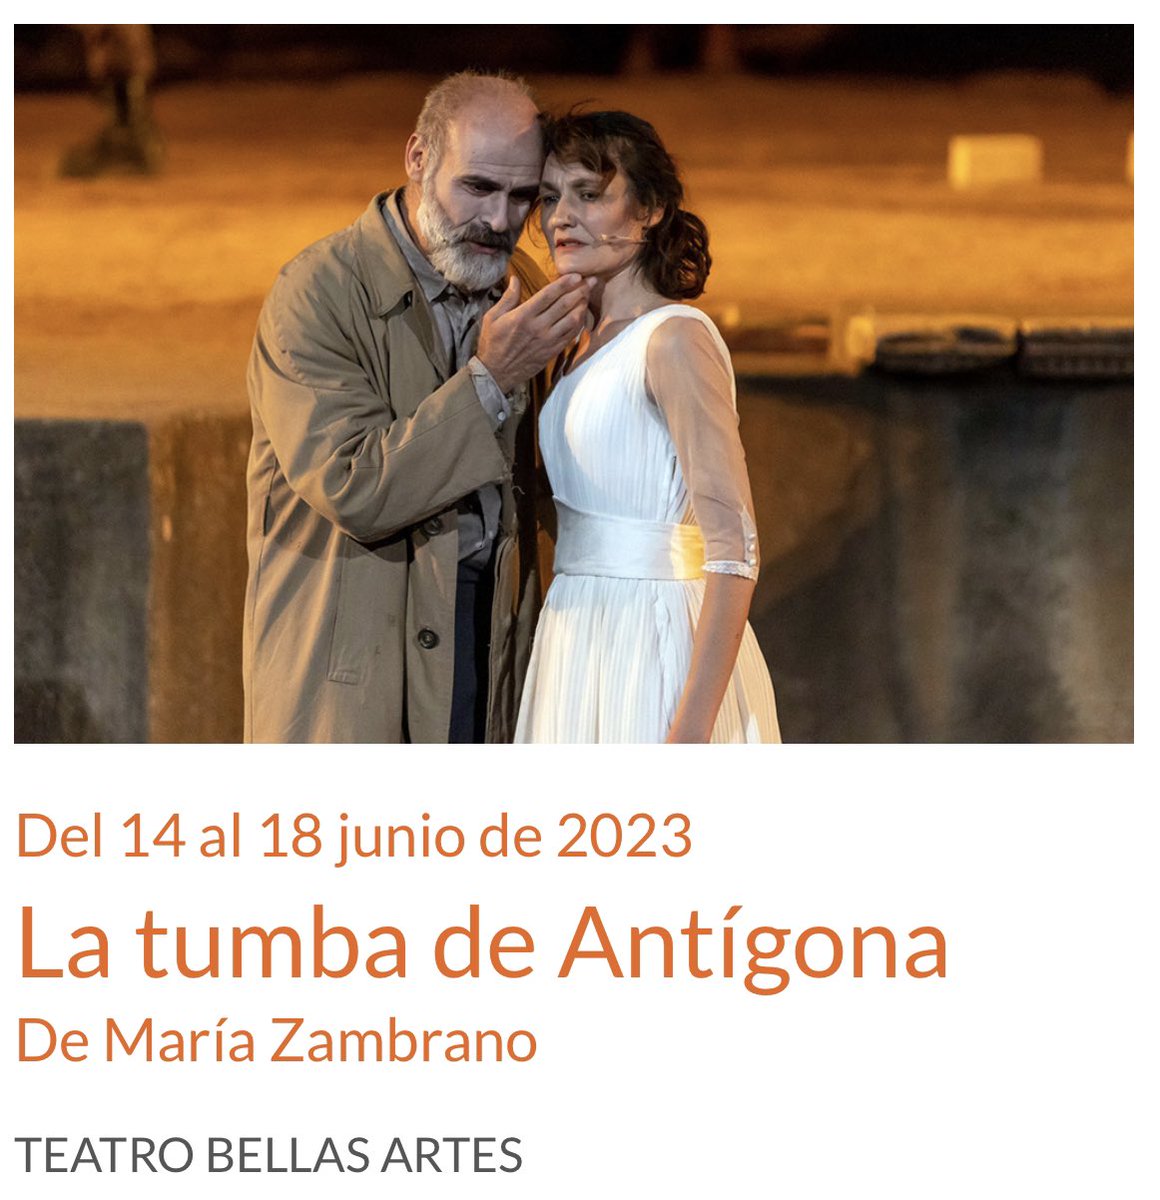 🟠 “La Tumba de Antígona”, últimas funciones en el @TeatroBellasArt de #Madrid

¡Sólo hasta mañana domingo 18 de junio! ‼️

#MeridaenMadrid #Merida69